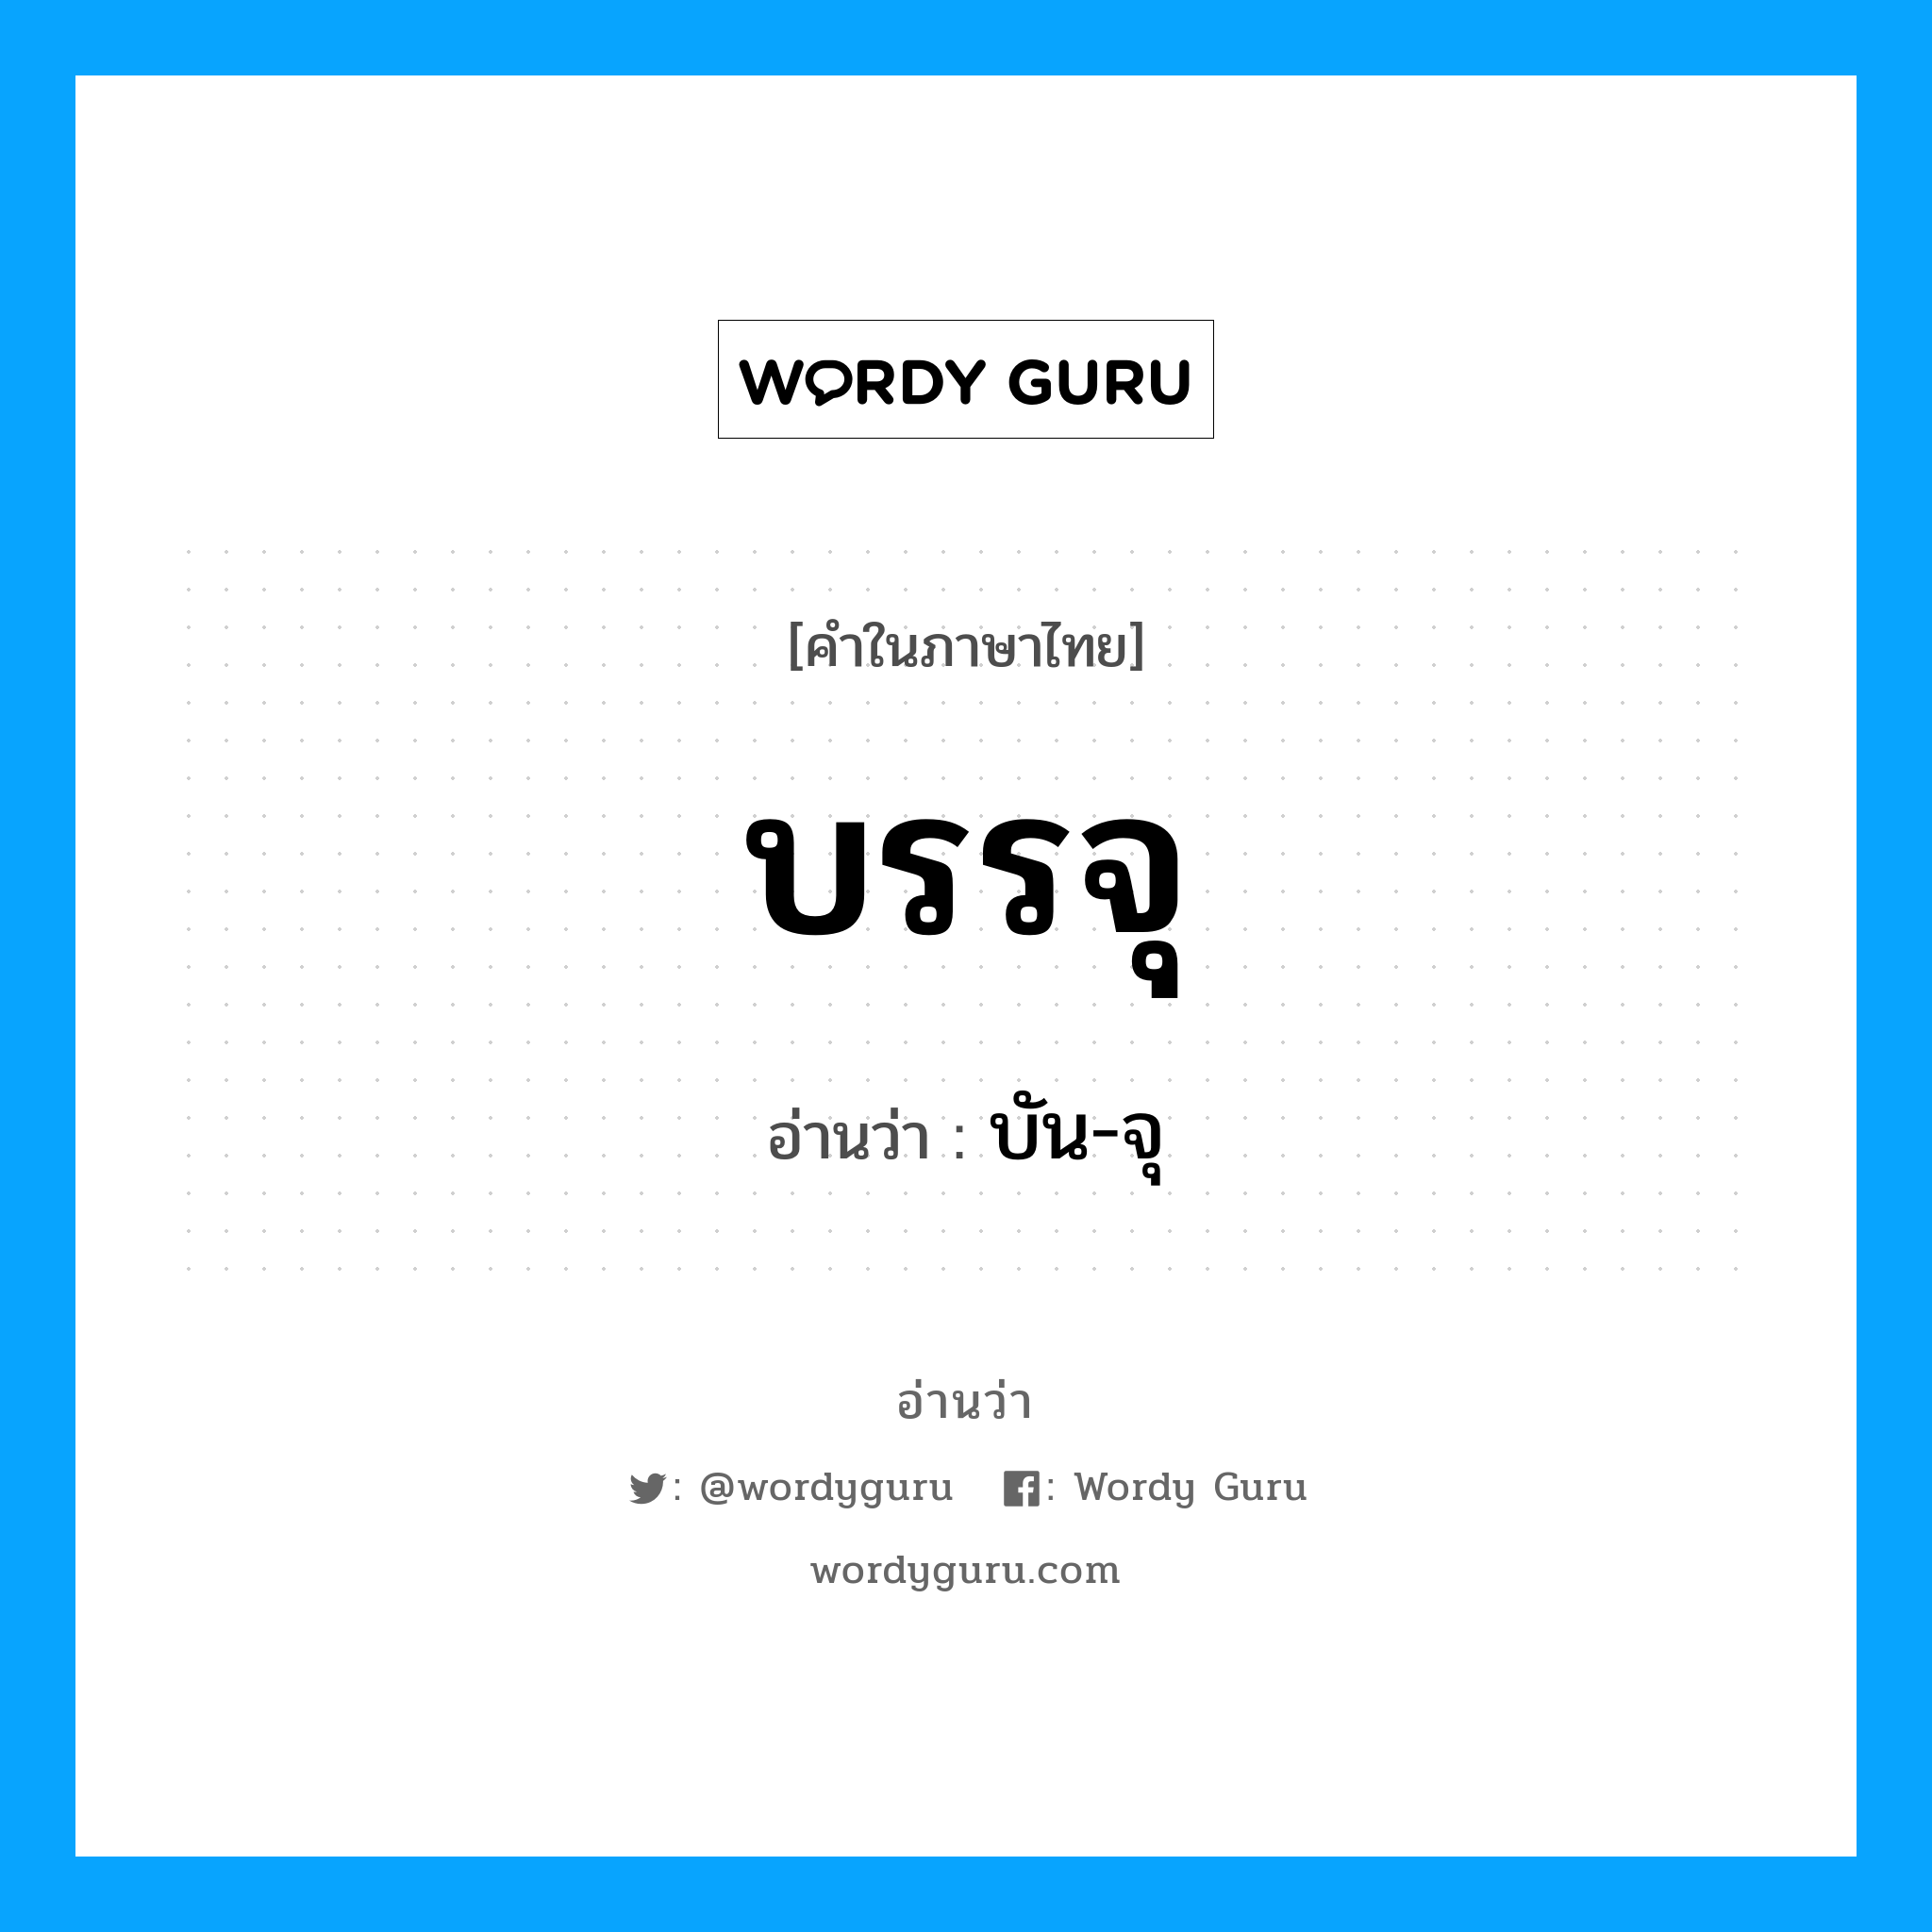 บัน-จุ เป็นคำอ่านของคำไหน?, คำในภาษาไทย บัน-จุ อ่านว่า บรรจุ